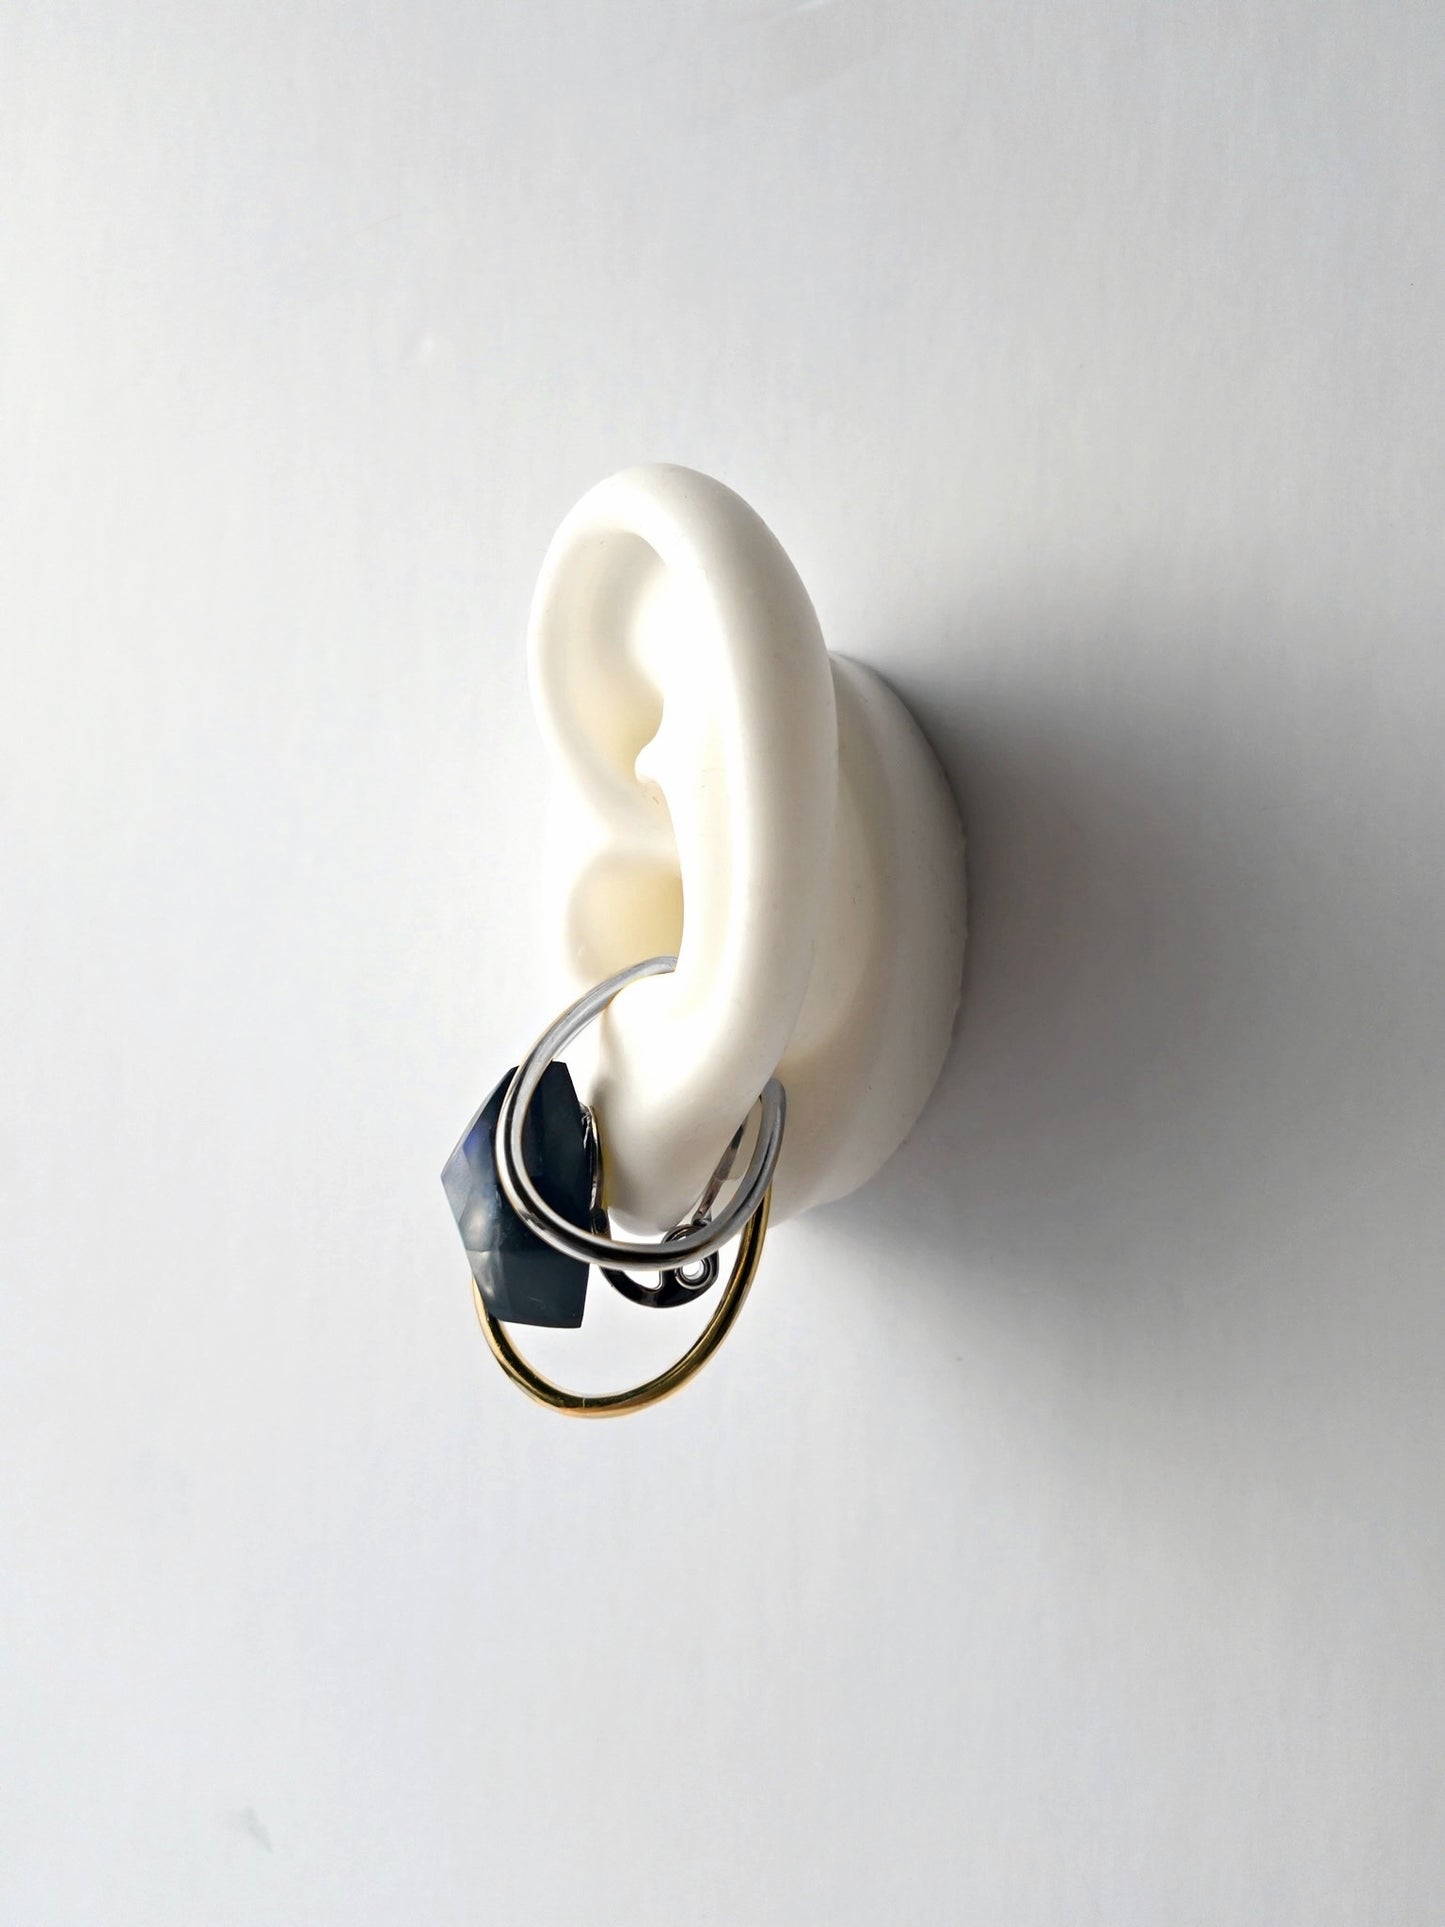 Custom double ring, ear cuff Interchangeable